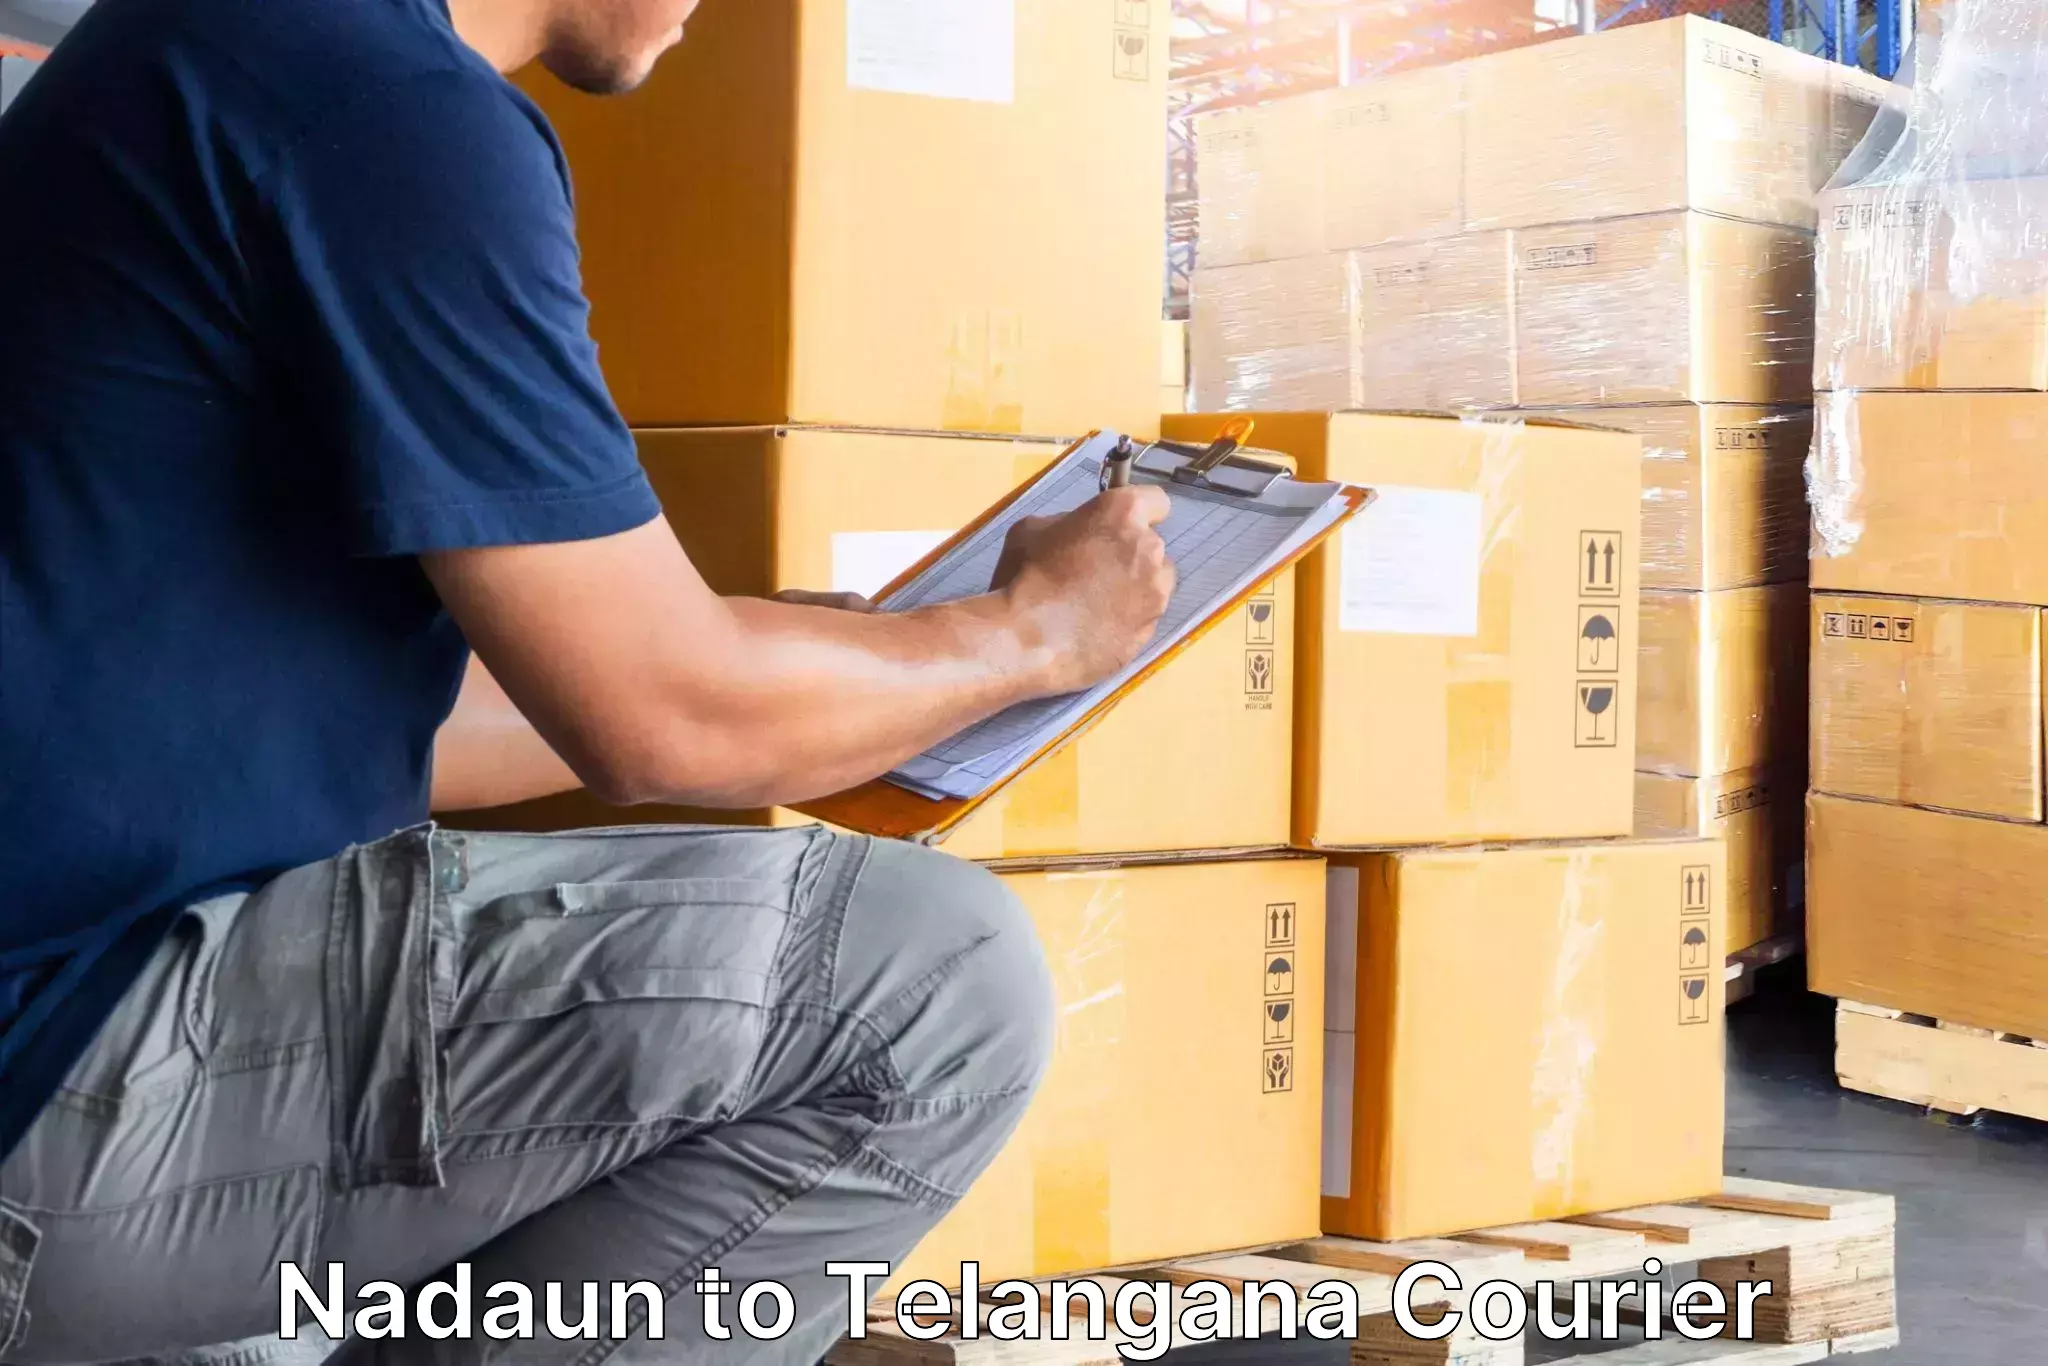 Reliable furniture movers Nadaun to Yellandu